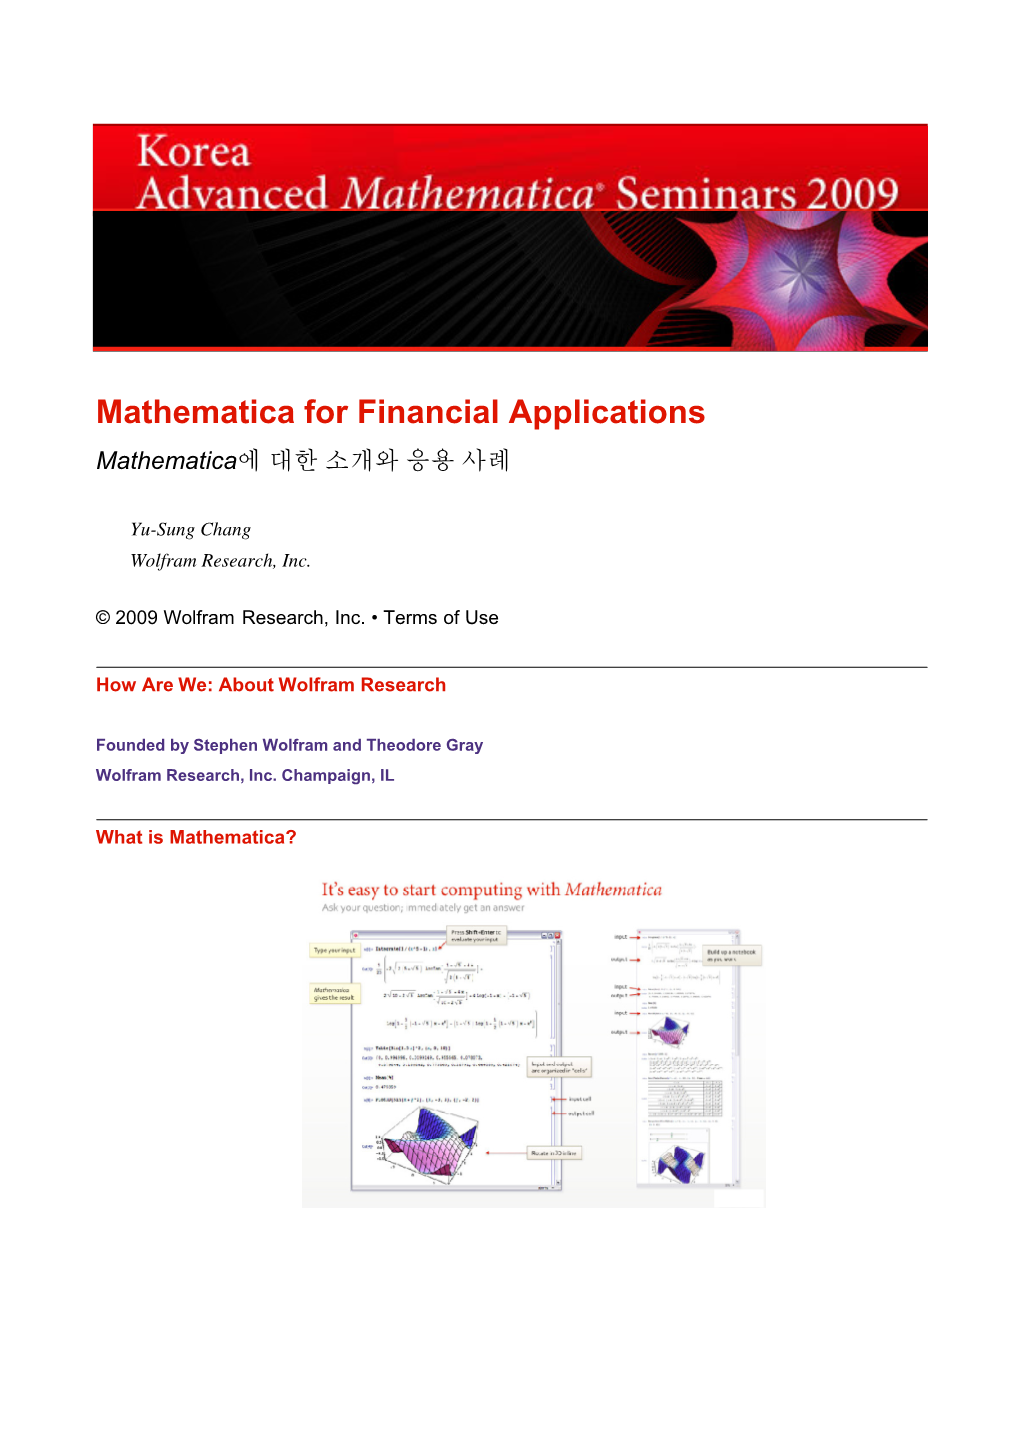 Mathematica for Financial Applications Mathematica에 대한 소개와 응용 사례